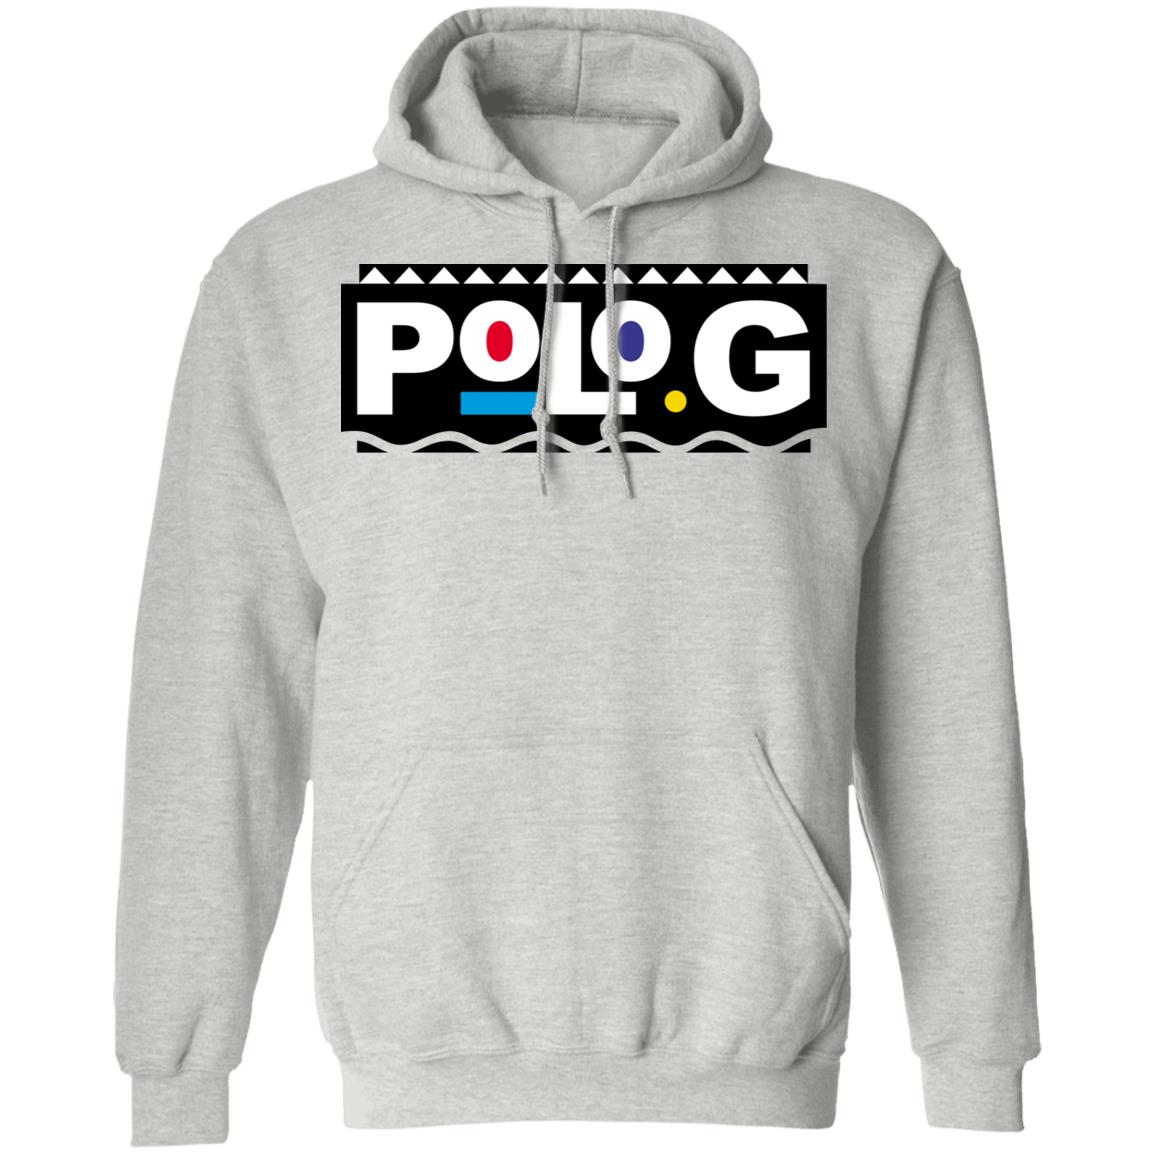 Polo G Shirts, Polo G Merch, Polo G Hoodies, Polo G Vinyl Records